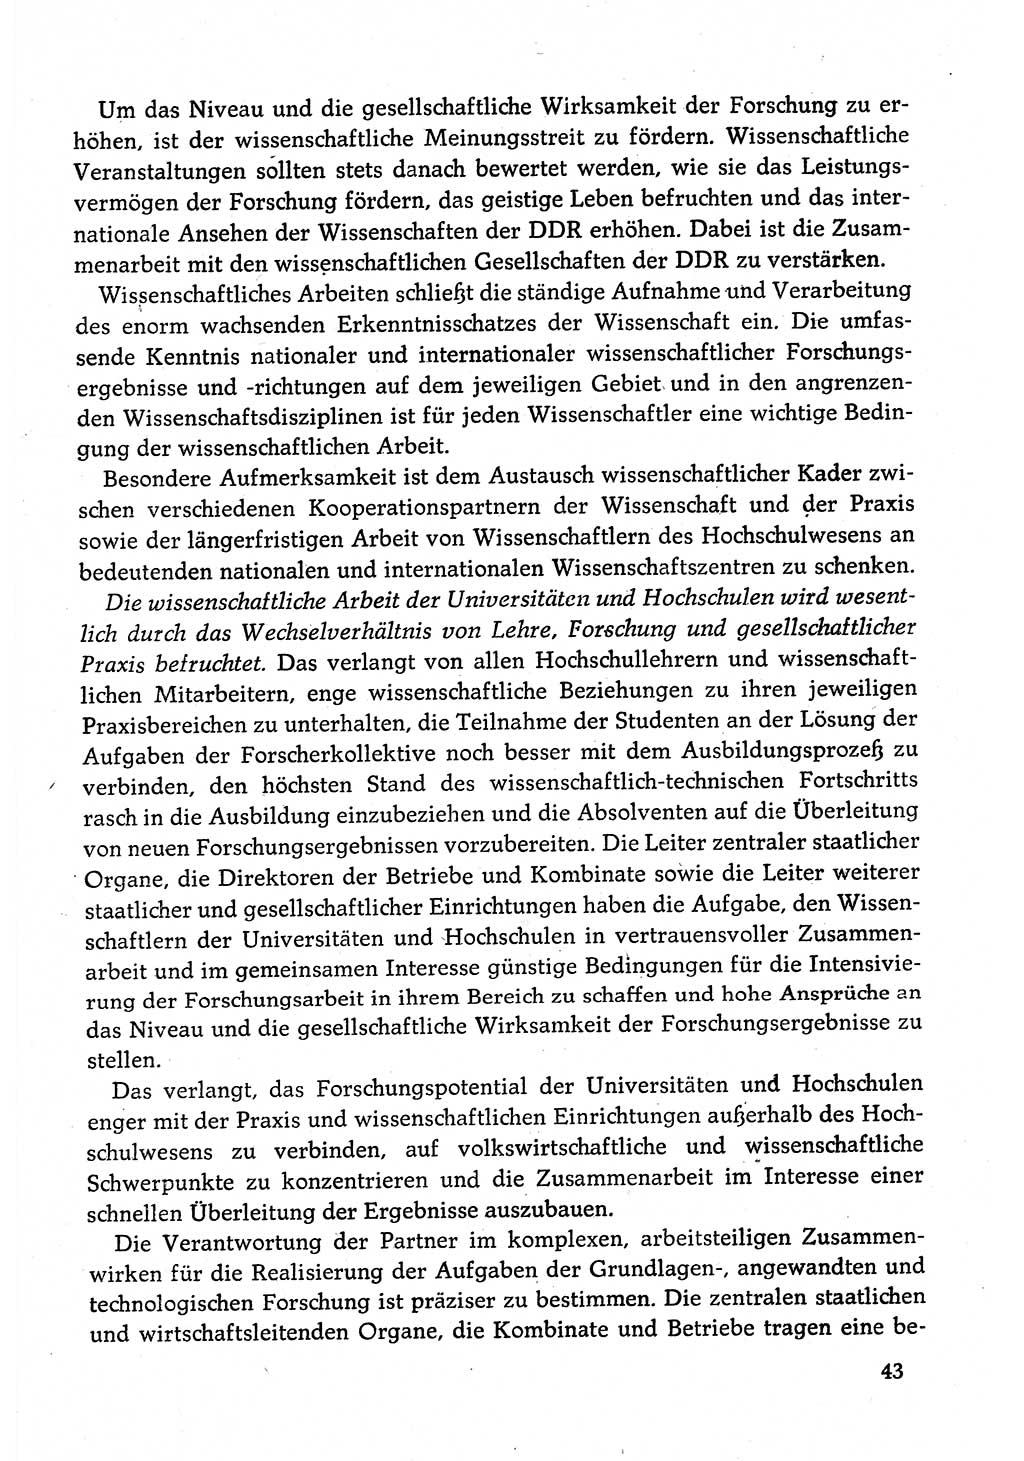 Dokumente der Sozialistischen Einheitspartei Deutschlands (SED) [Deutsche Demokratische Republik (DDR)] 1980-1981, Seite 43 (Dok. SED DDR 1980-1981, S. 43)